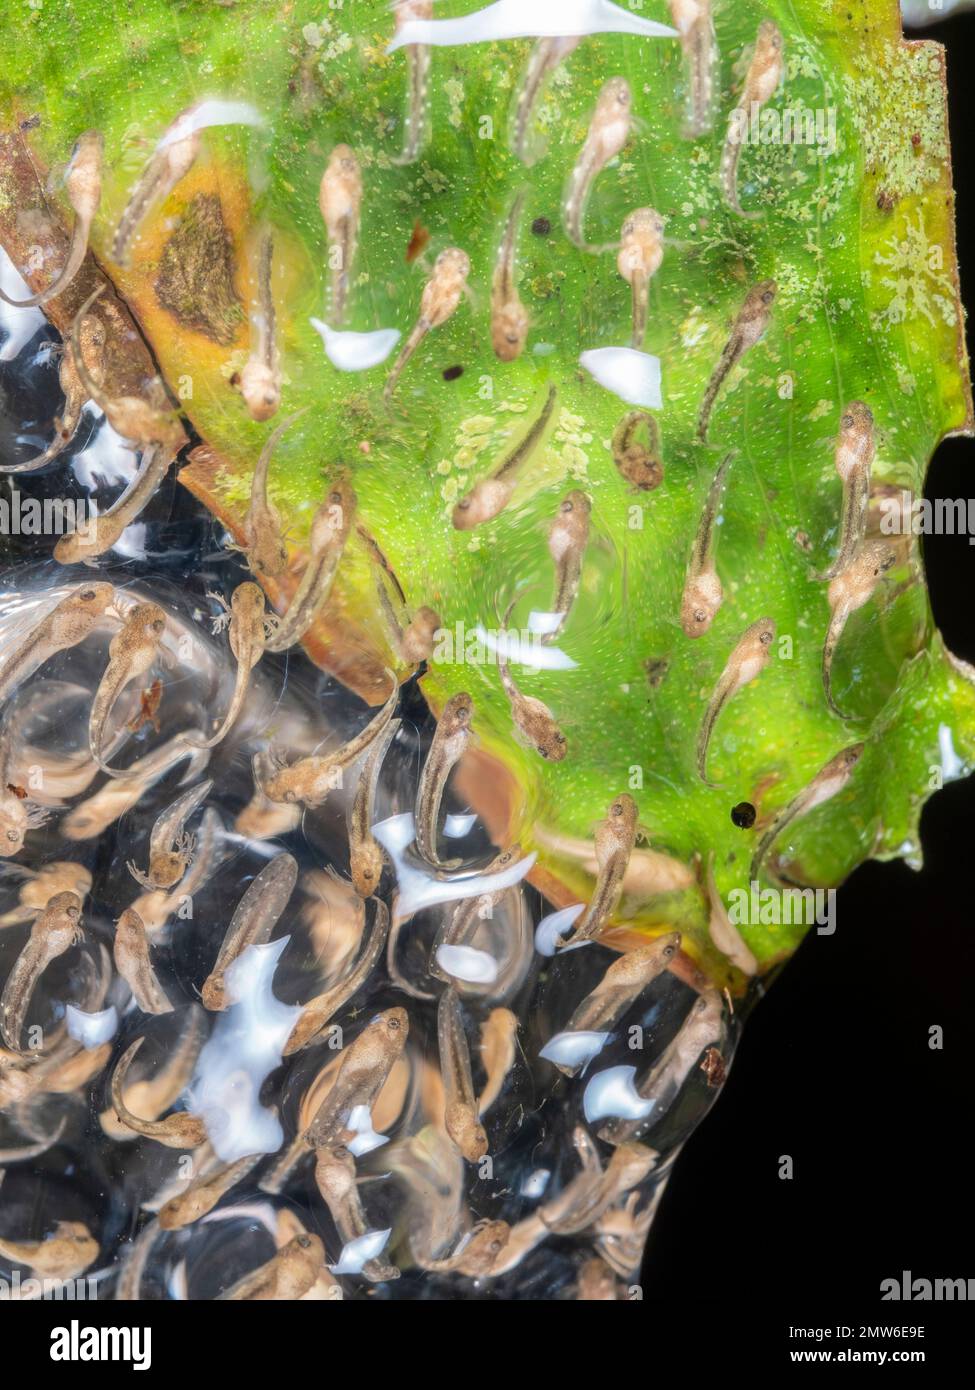 Desarrollo de renacuajos con branquias externas, de la rana arbórea Sarayacu (Dendropsophus sarayacuensis) suspendida sobre un estanque de selva tropical en la provincia de Orellana, Foto de stock